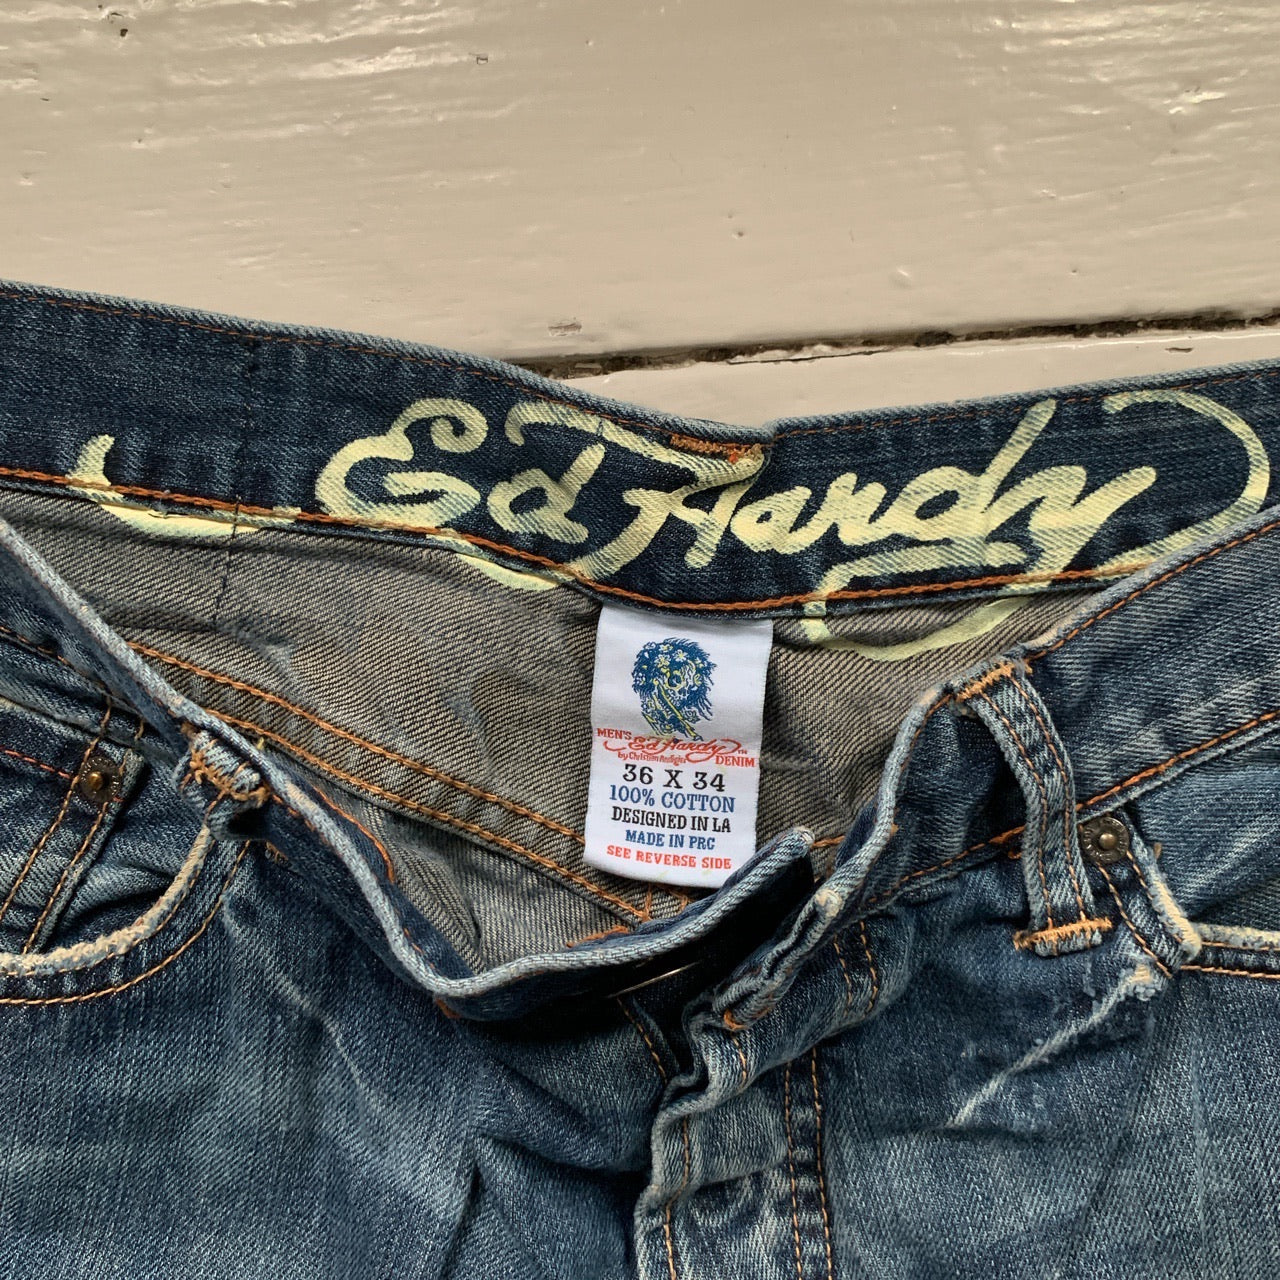 Ed Hardy Love Kills Slowly Jeans (36/34)